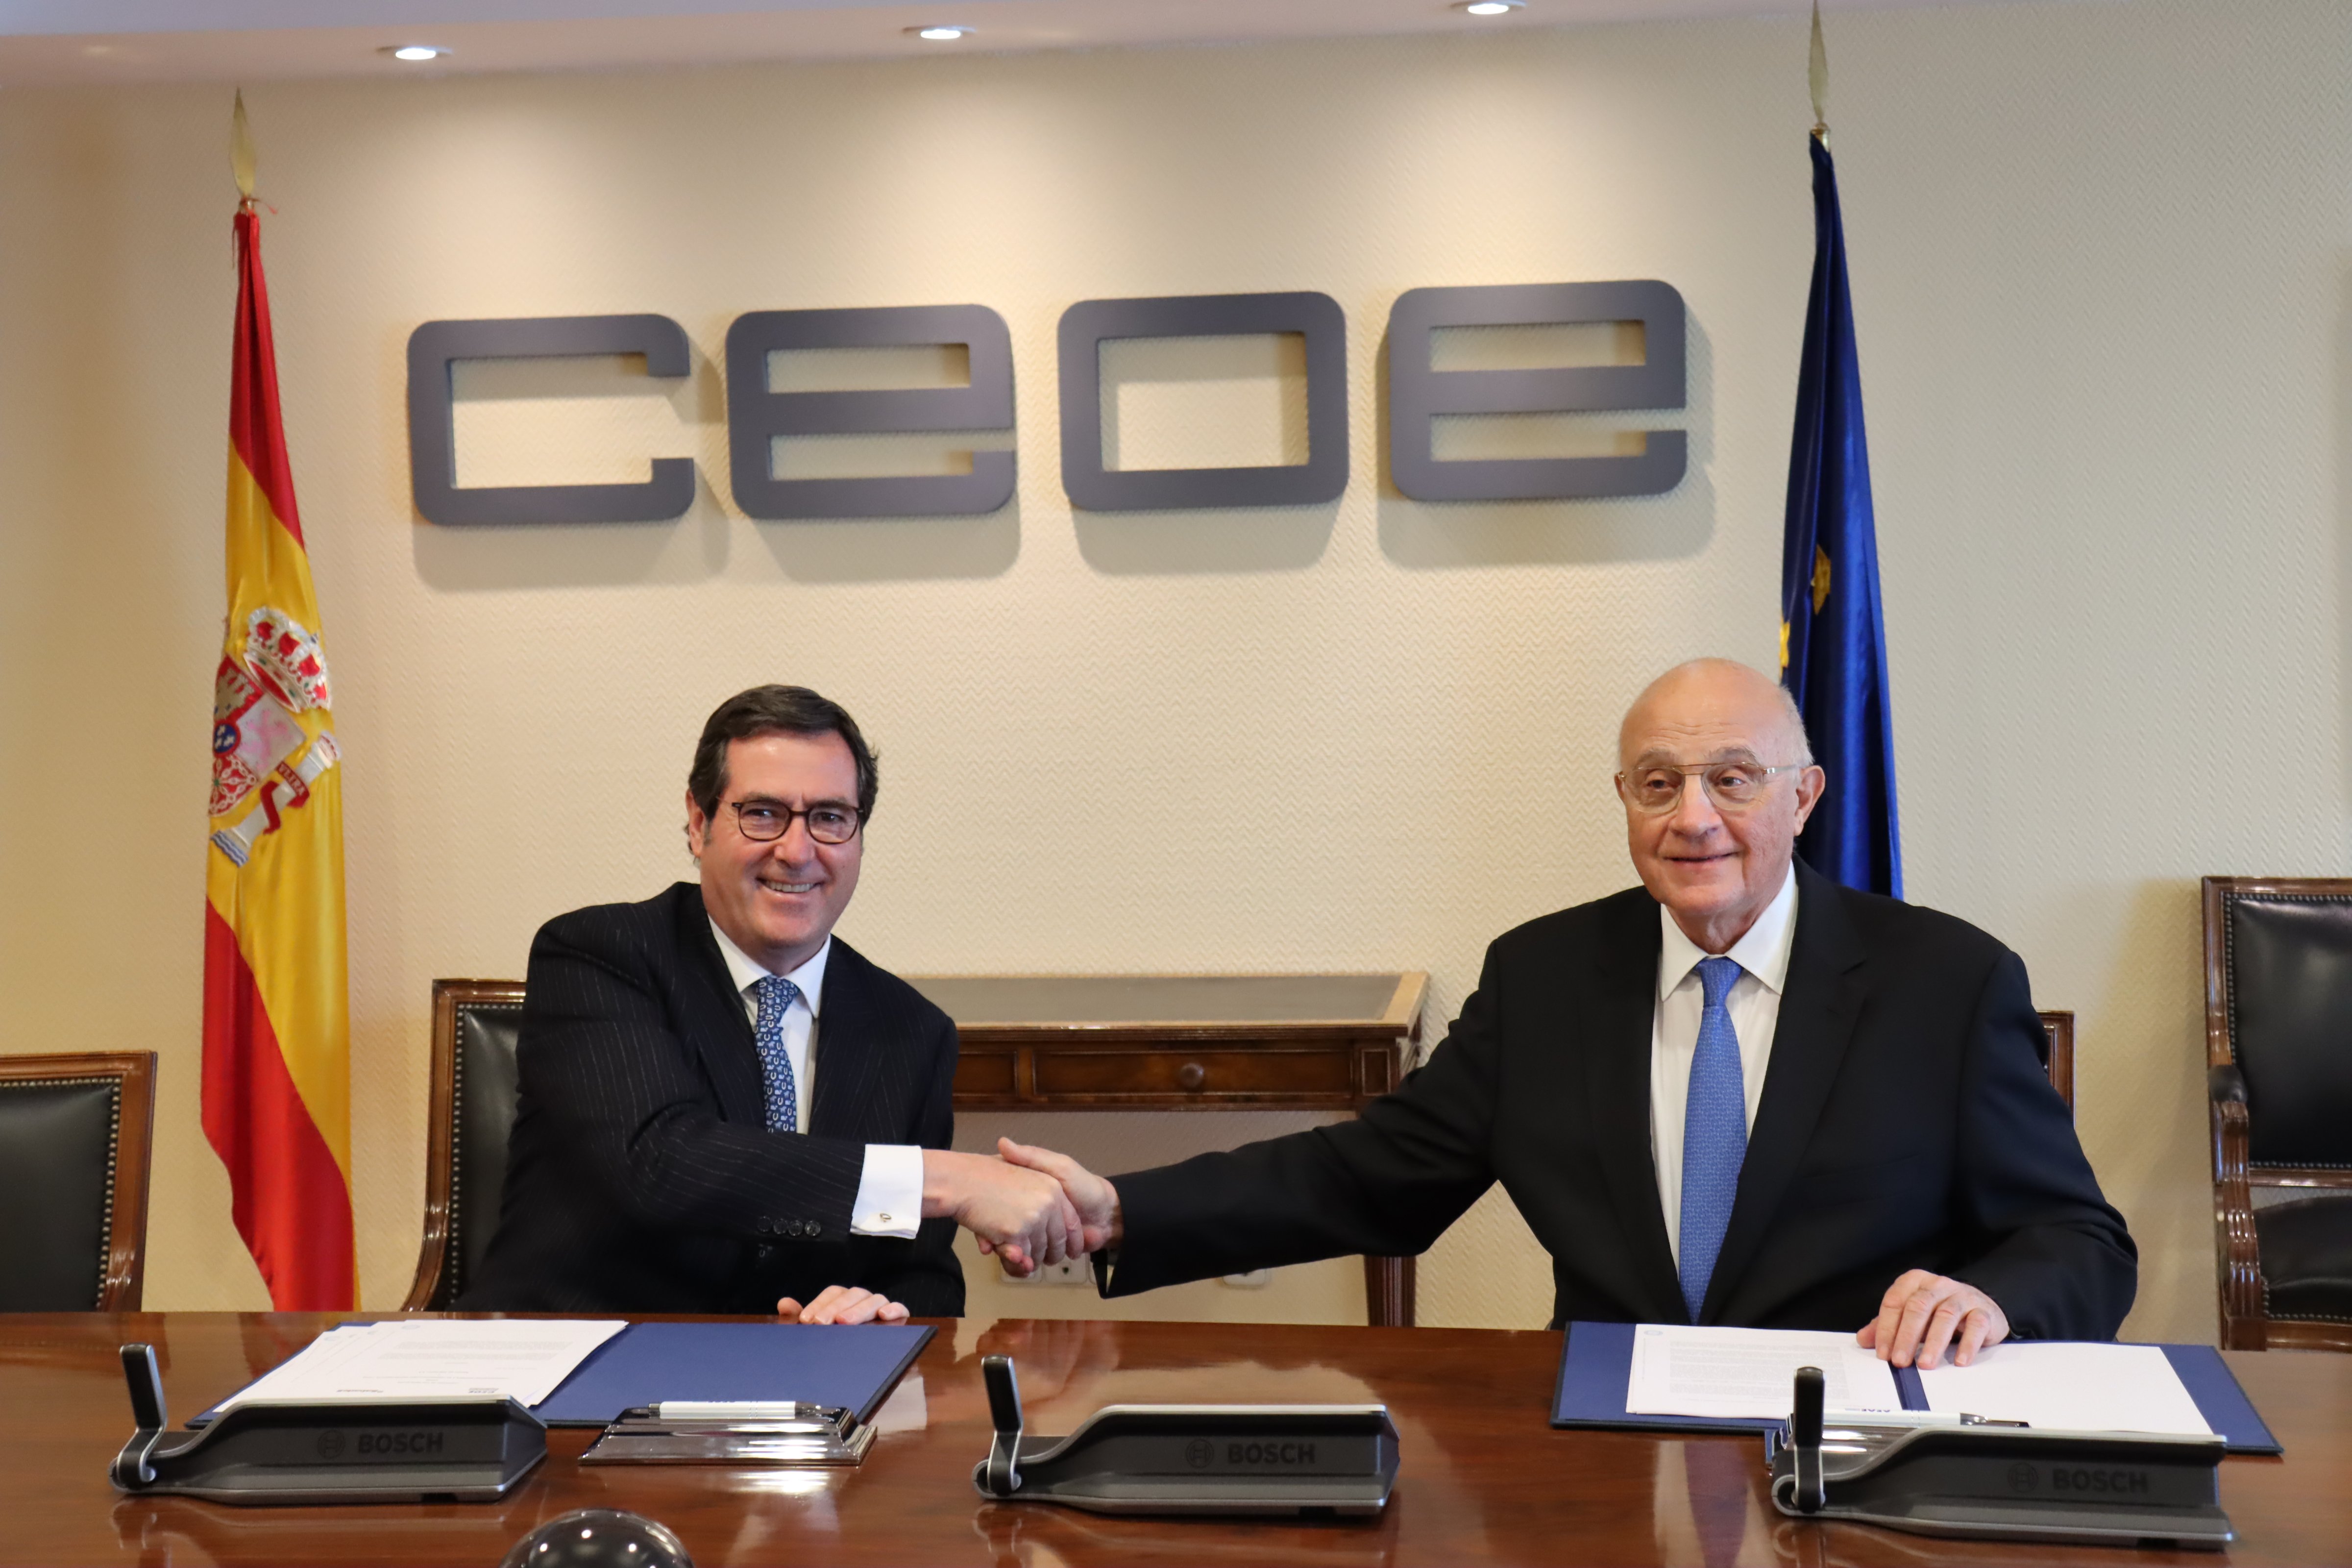 El Sabadell i la CEOE acorden facilitar el finançament al sector empresarial